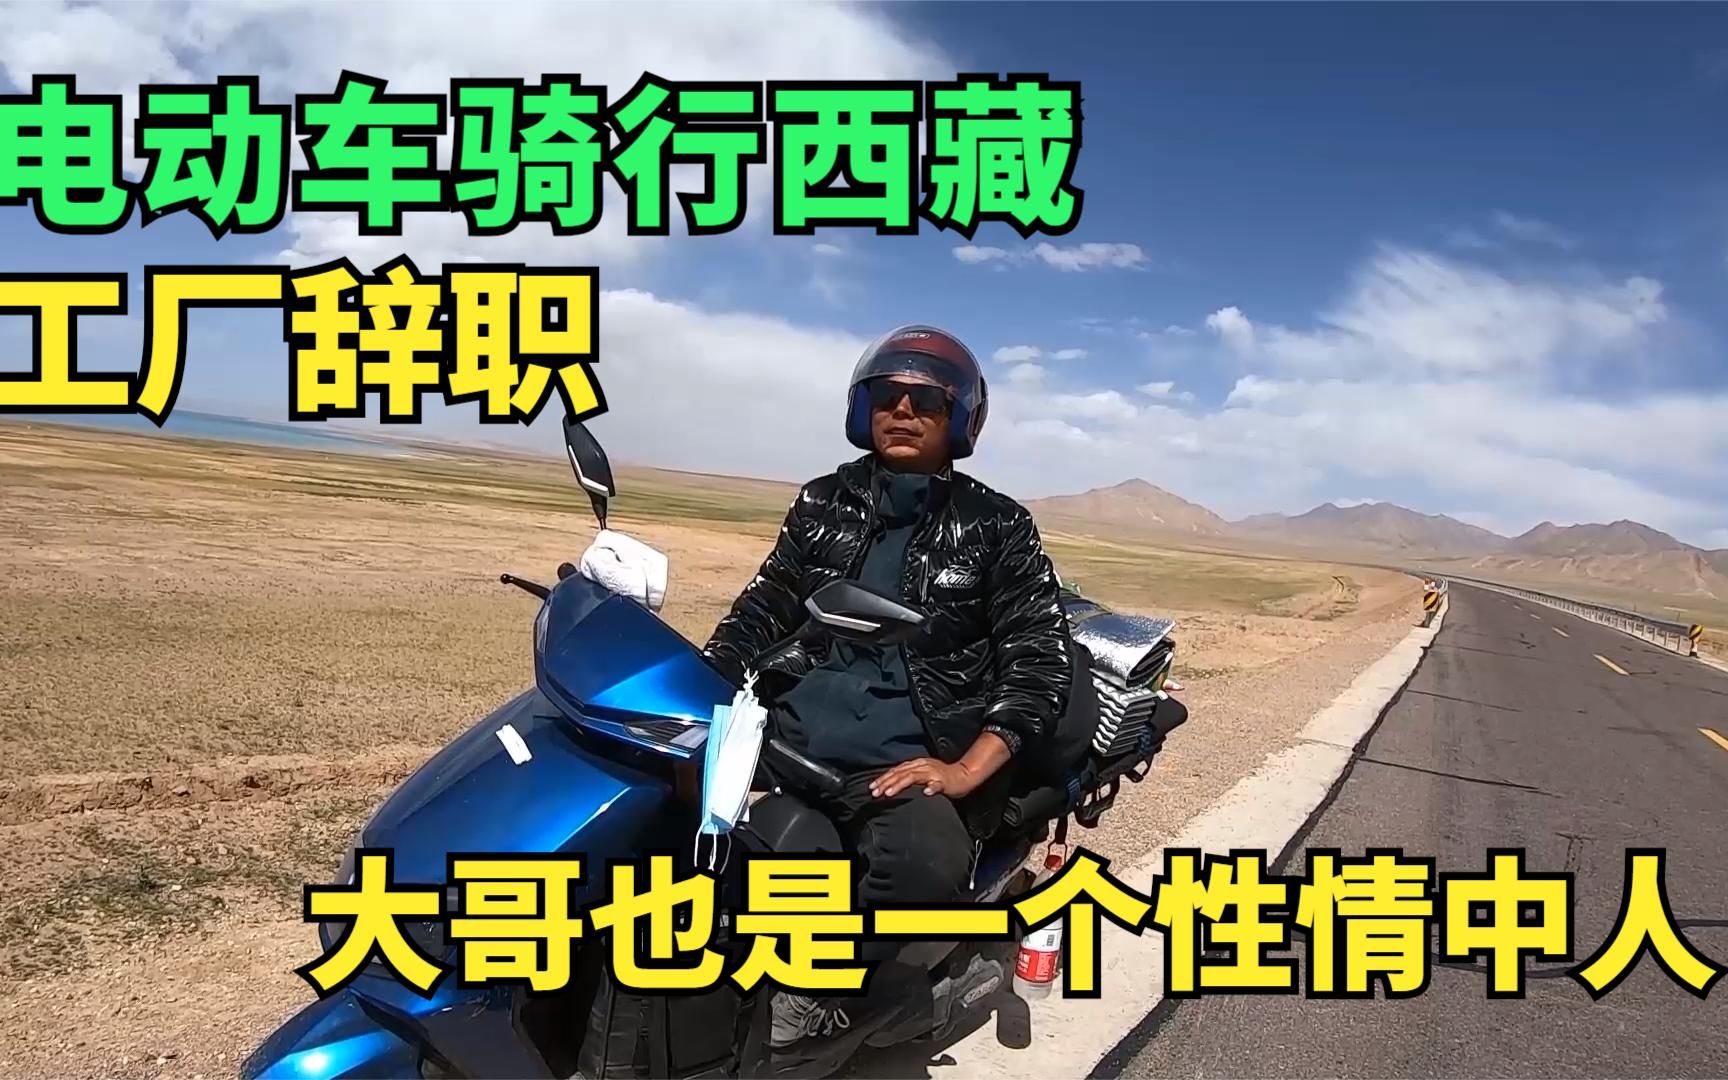 骑电动车旅行西藏的湖北大哥，从江苏工厂辞职，挣够了钱就出去浪